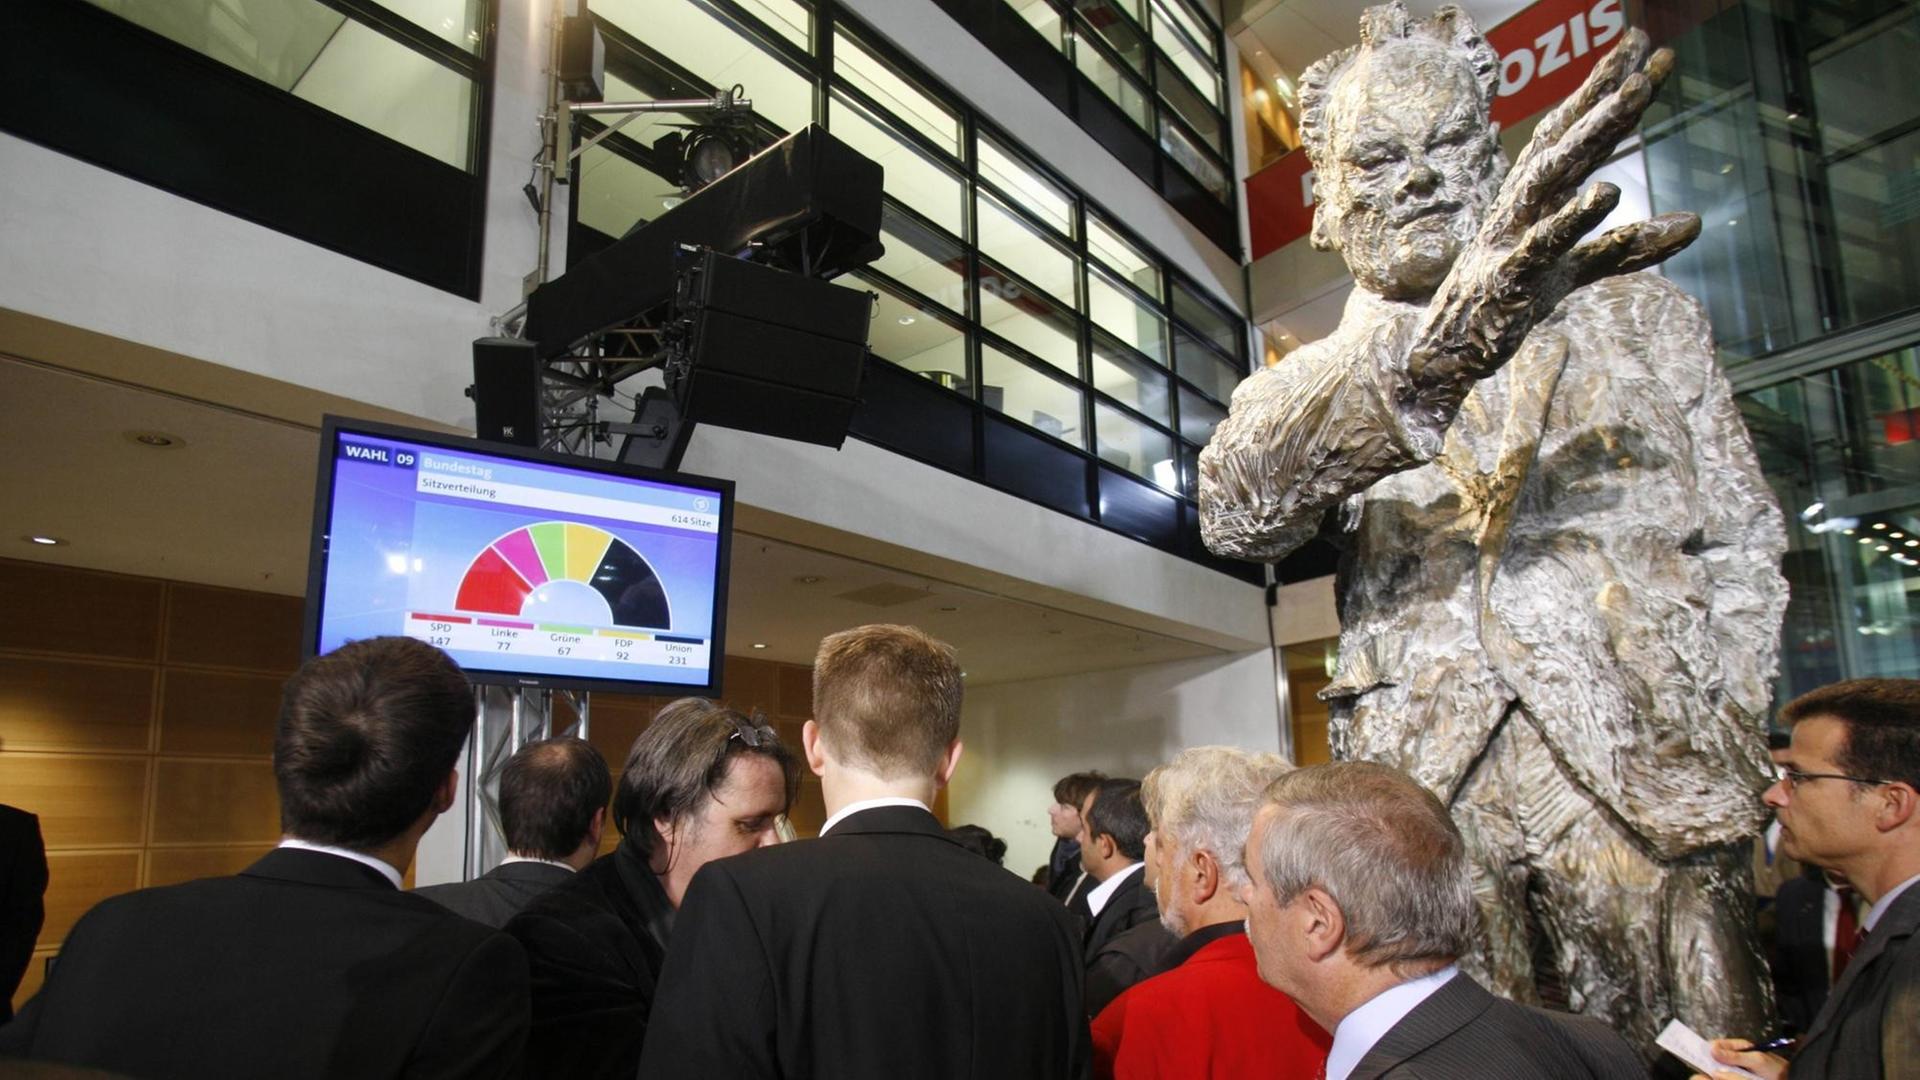 Besucher im Willy-Brandt-Haus, der Parteizentrale der SPD, verfolgen unter der Statue von Willy Brandt Hochrechnungen zur Bundestagswahl 2009 am Fernseher.